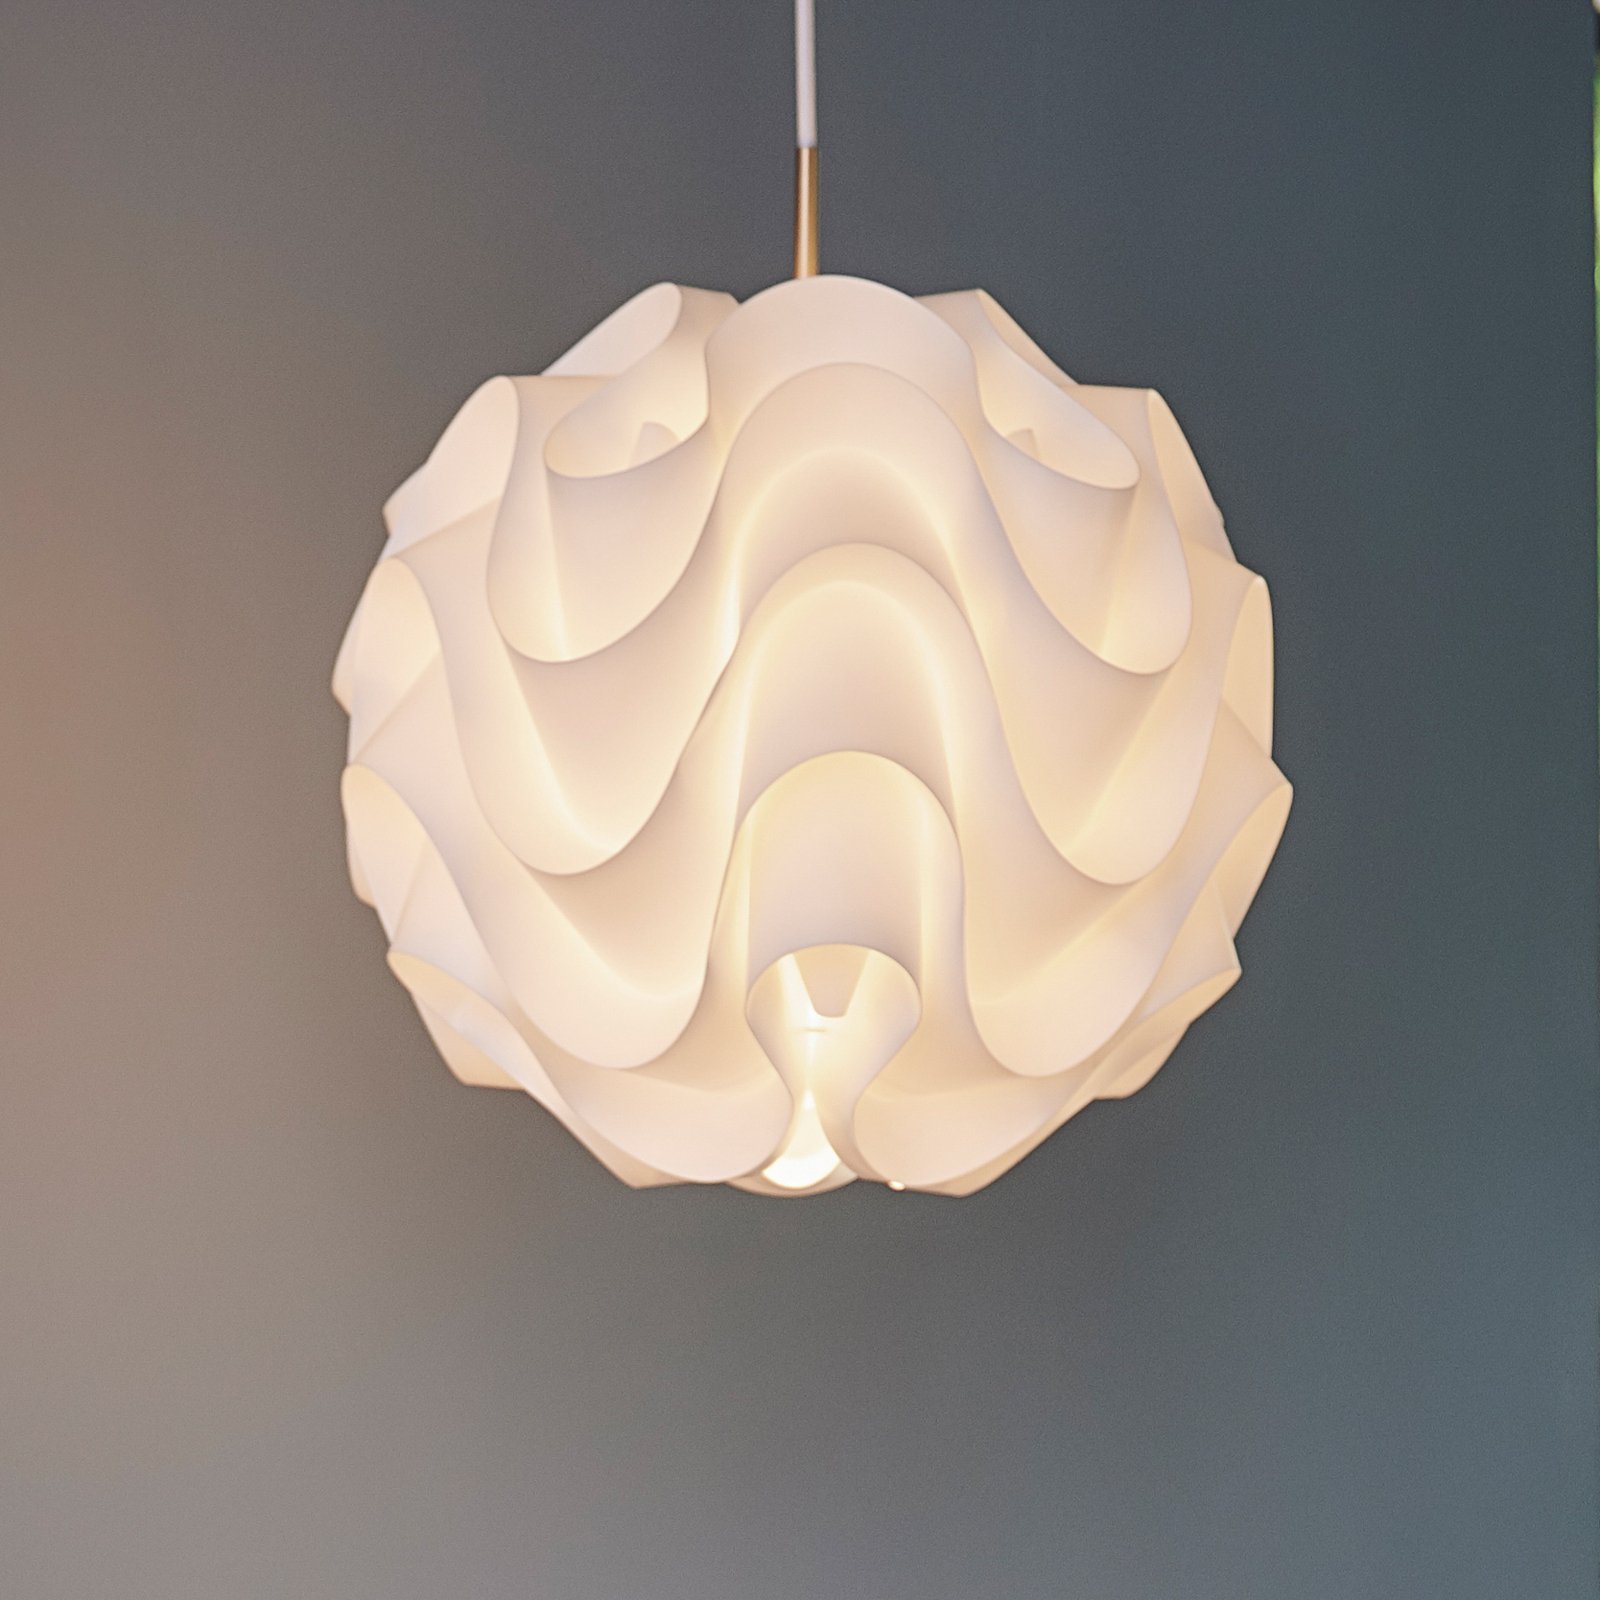 LE KLINT 172 függő lámpa, fehér/sárgaréz, Ø 33 cm